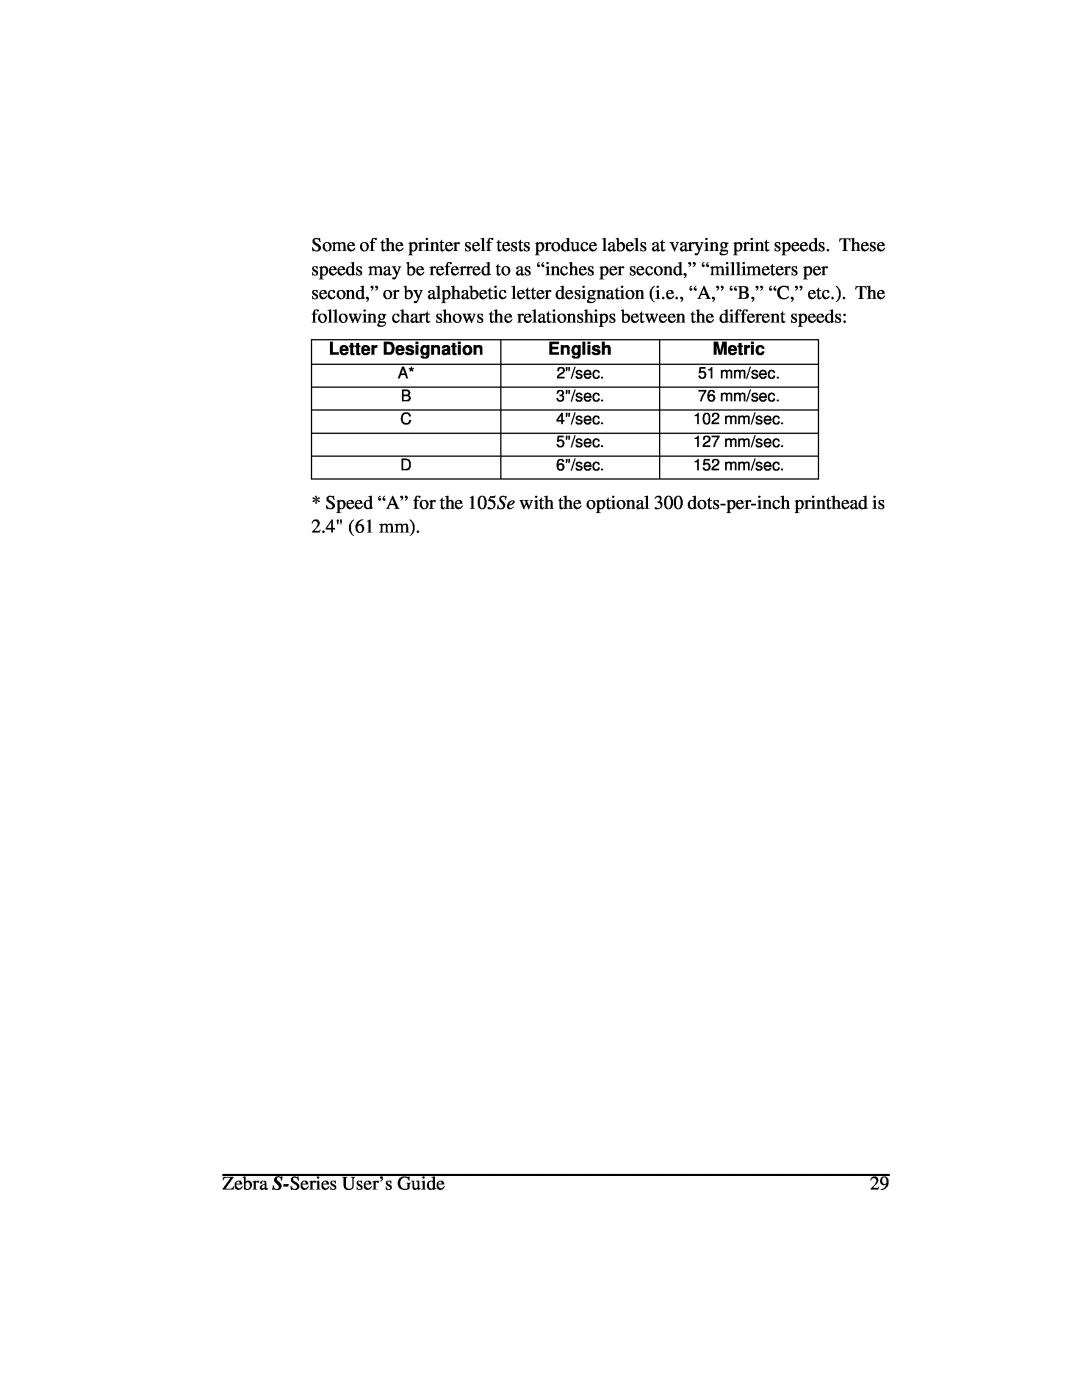 Zebra Technologies 105Se manual Letter Designation, English, Metric, 2/sec, 3/sec, 4/sec, 5/sec, 6/sec 